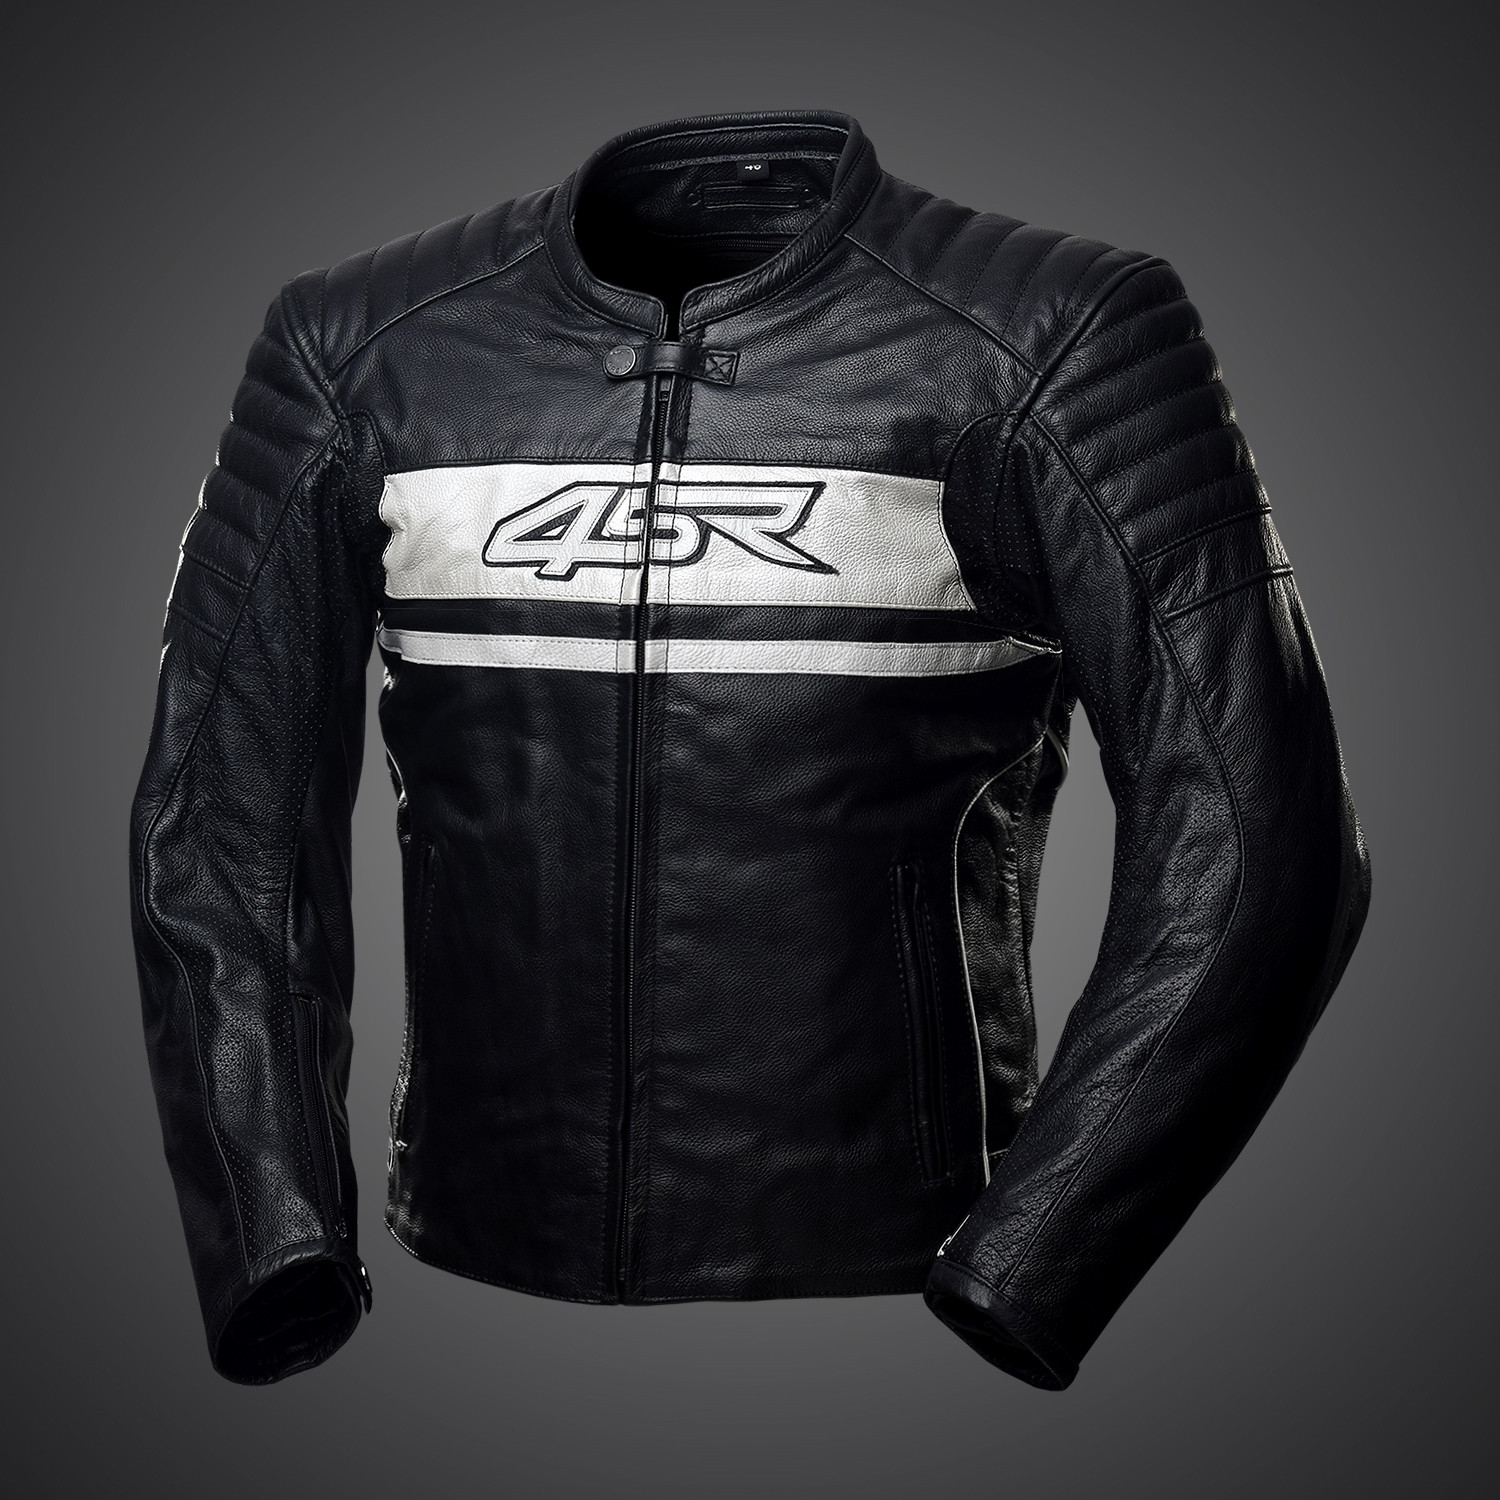 4SR Roadster II - Pearl White biker jacket